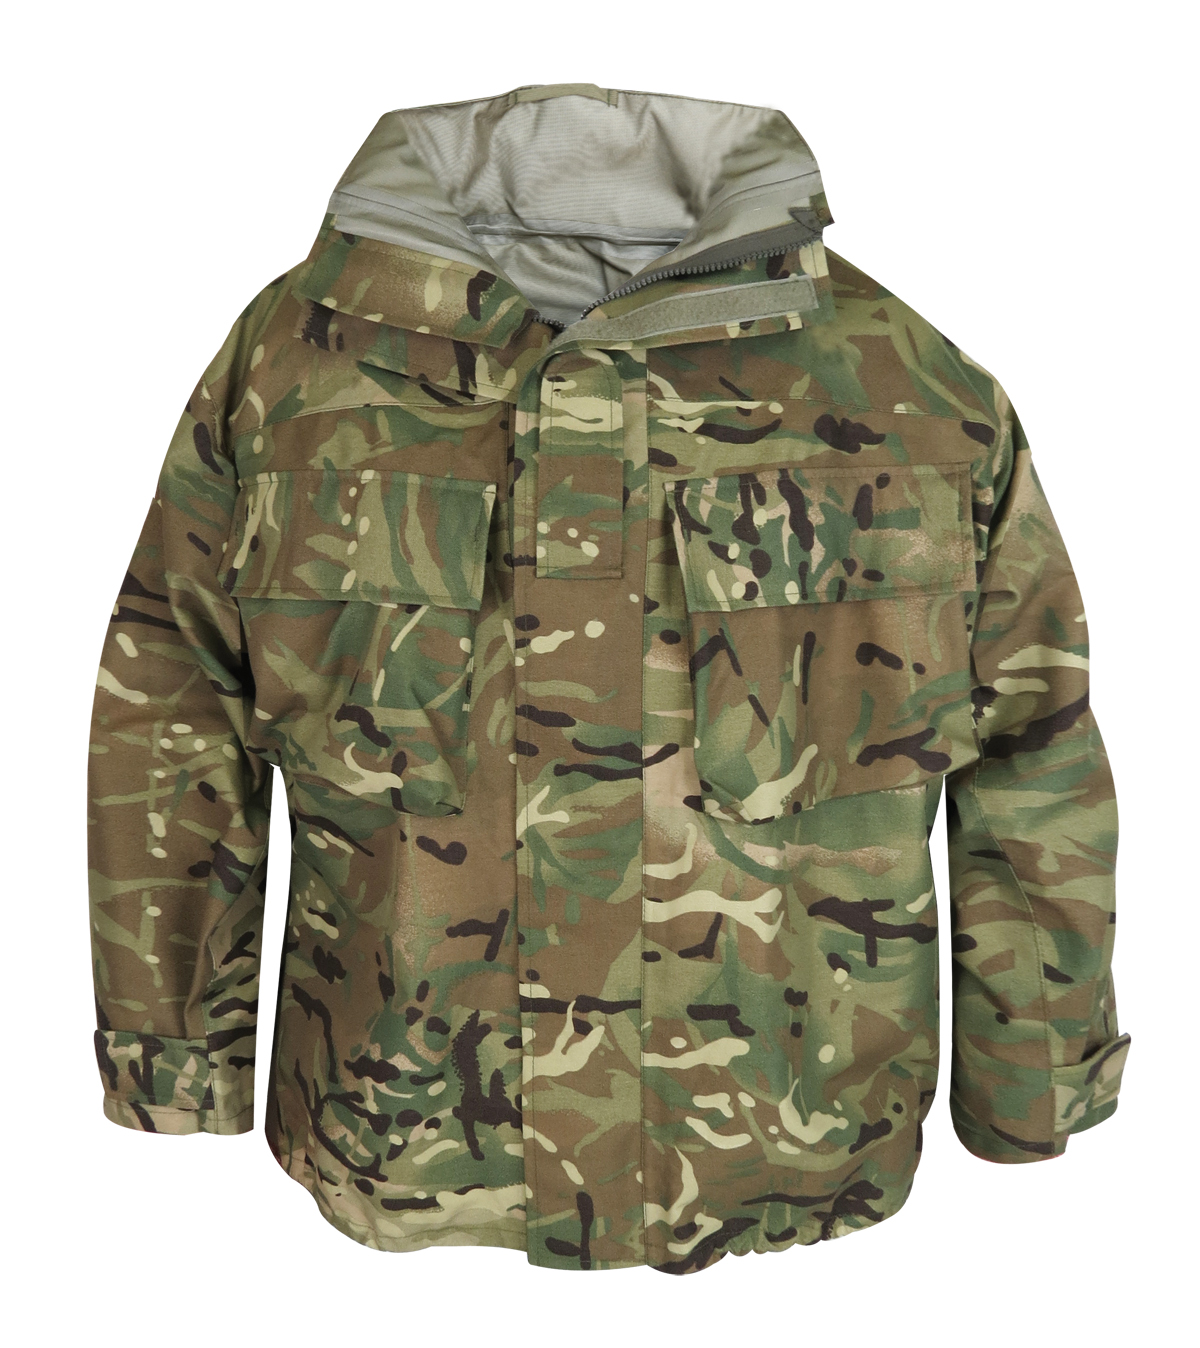 New British MTP Goretex Jacket by British Army